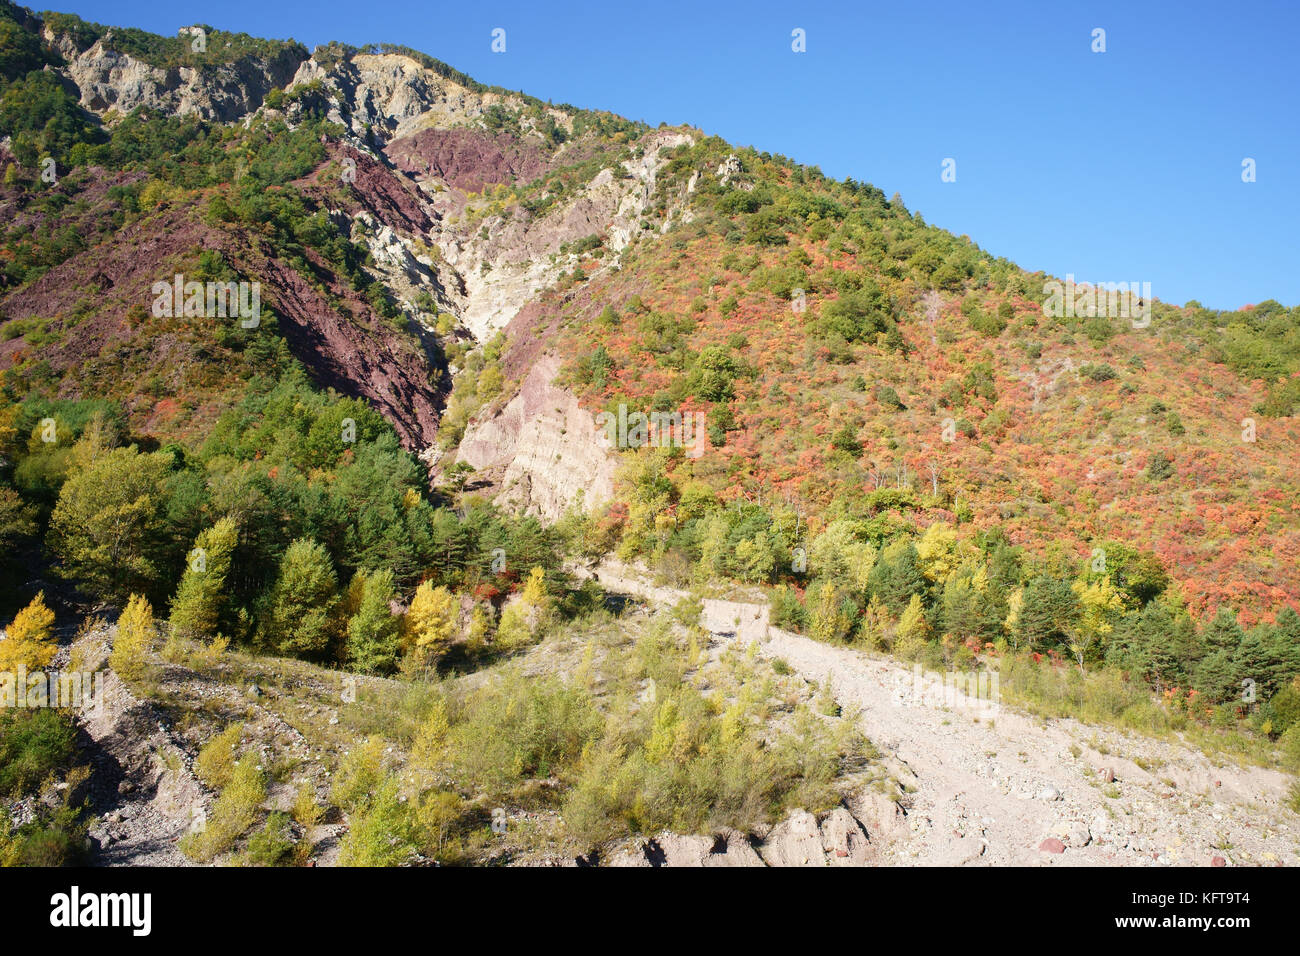 Herbstliche Farben und tief erodierte Berghänge im Tinée Valley. Saint-Sauveur-sur-Tinée, Hinterland der französischen Riviera, Alpes-Maritimes, Frankreich. Stockfoto